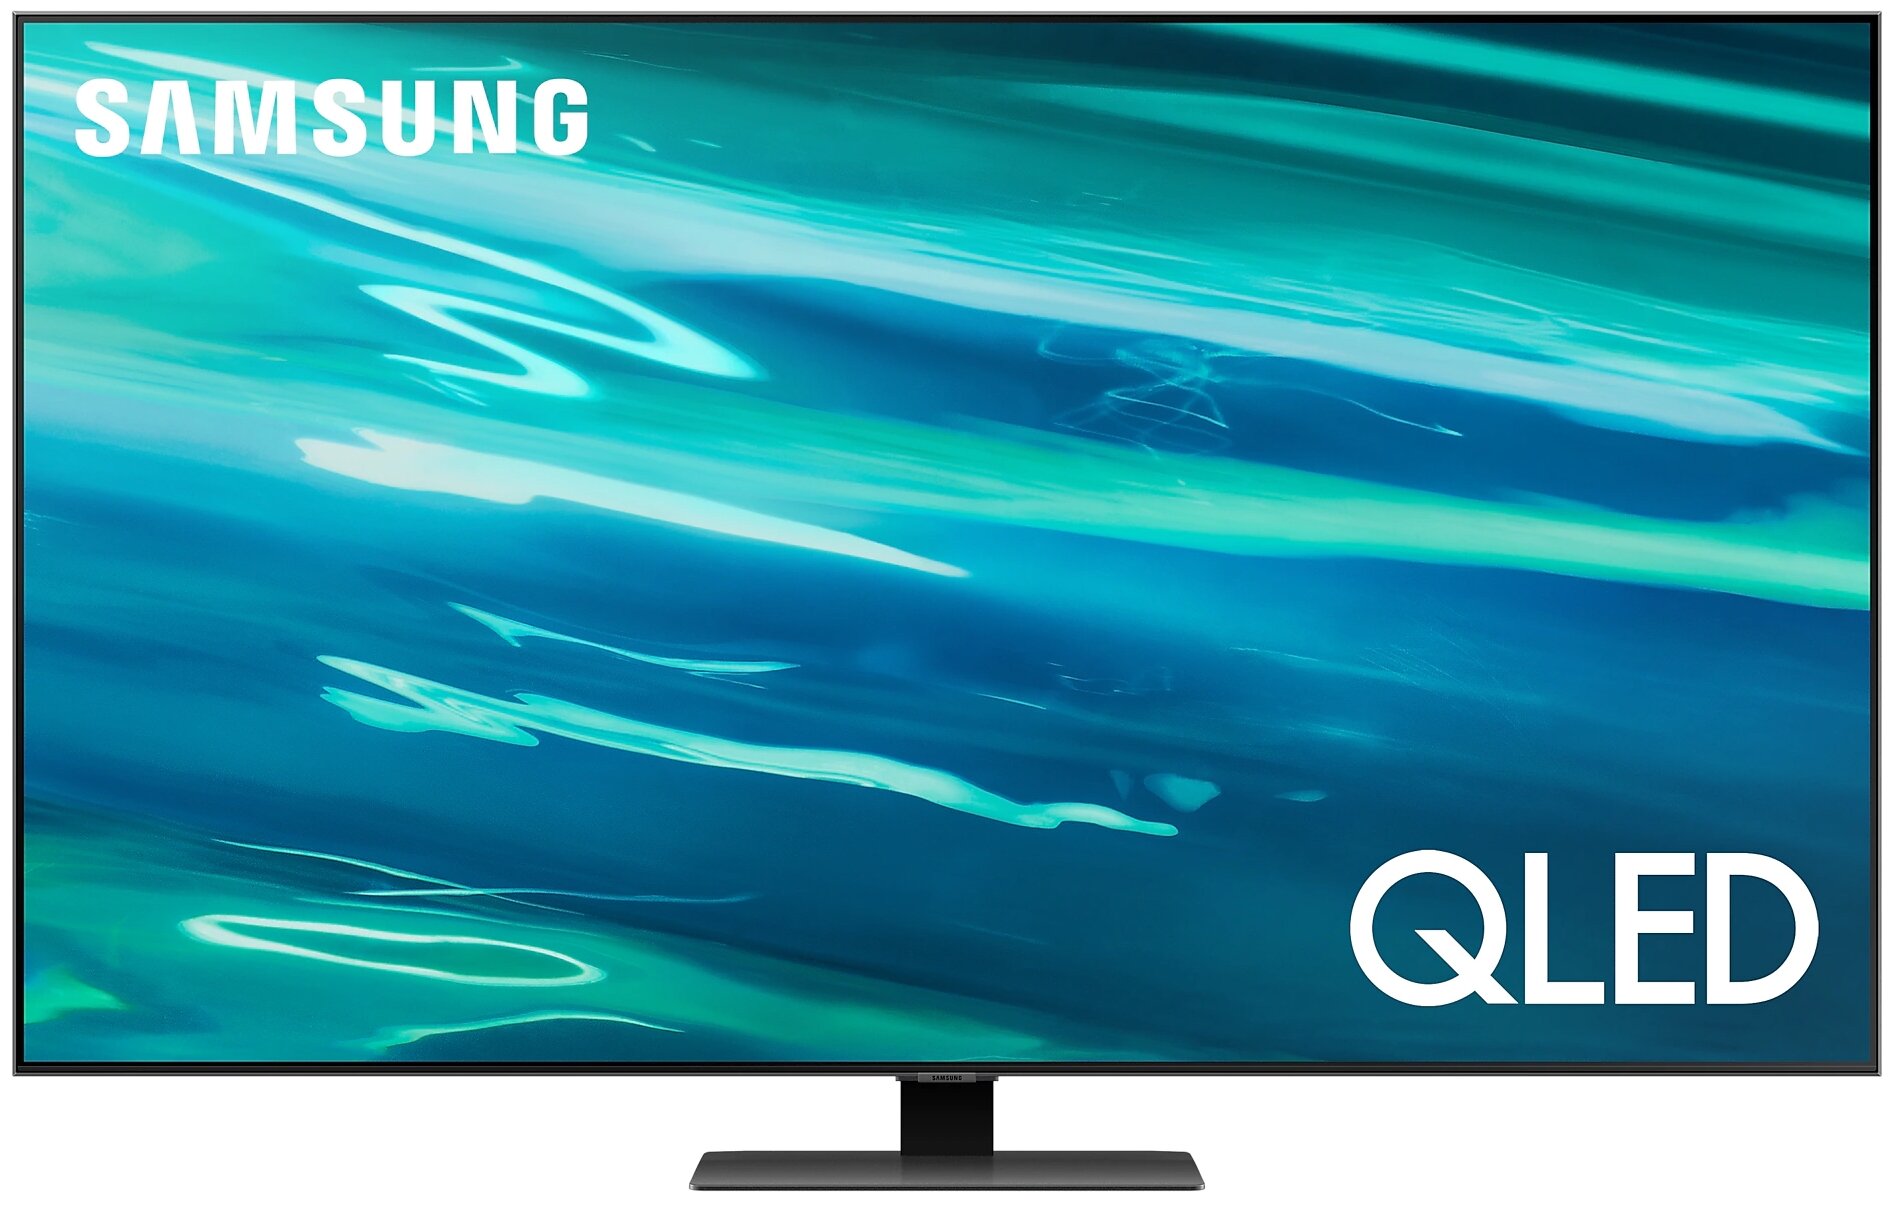 QLED телевизор Samsung QE75Q80AAUXRU